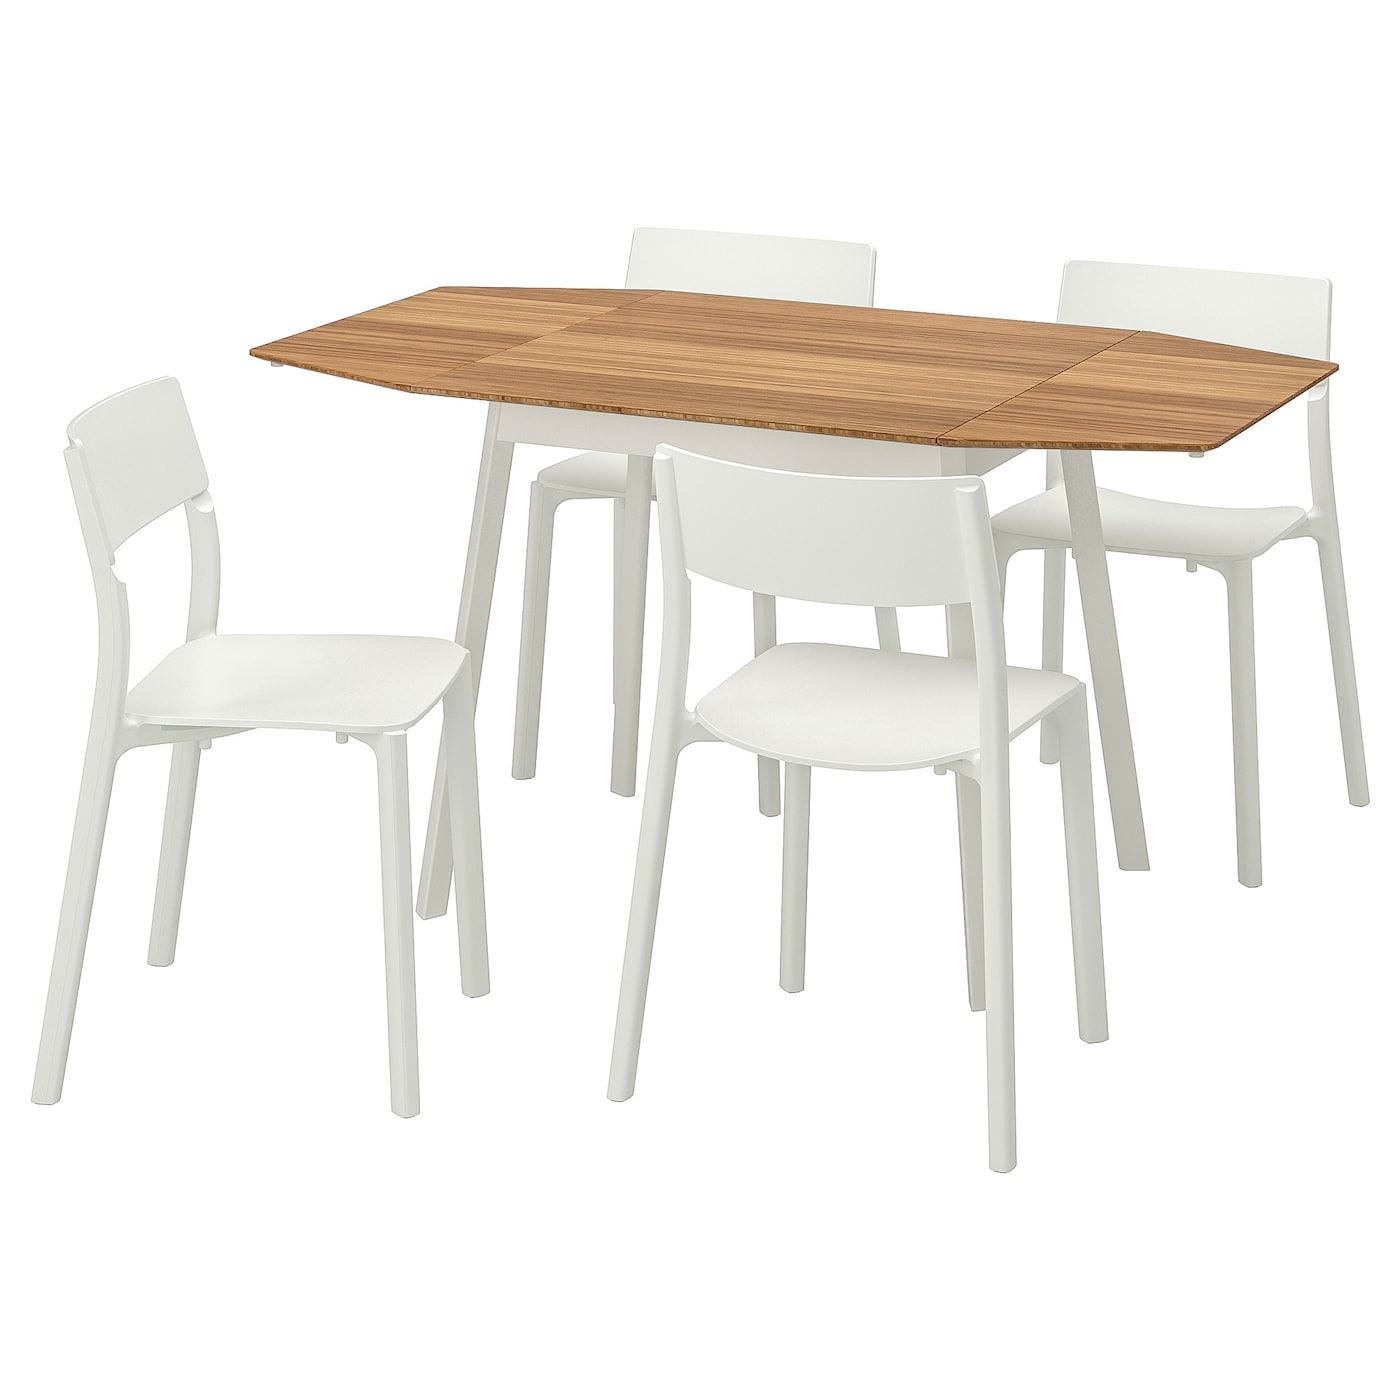 Стол и 4 стула - PS 2012 / JANINGE IKEA / ЙАНИНГЕ ИКЕА, 106х80х74 см,  белый